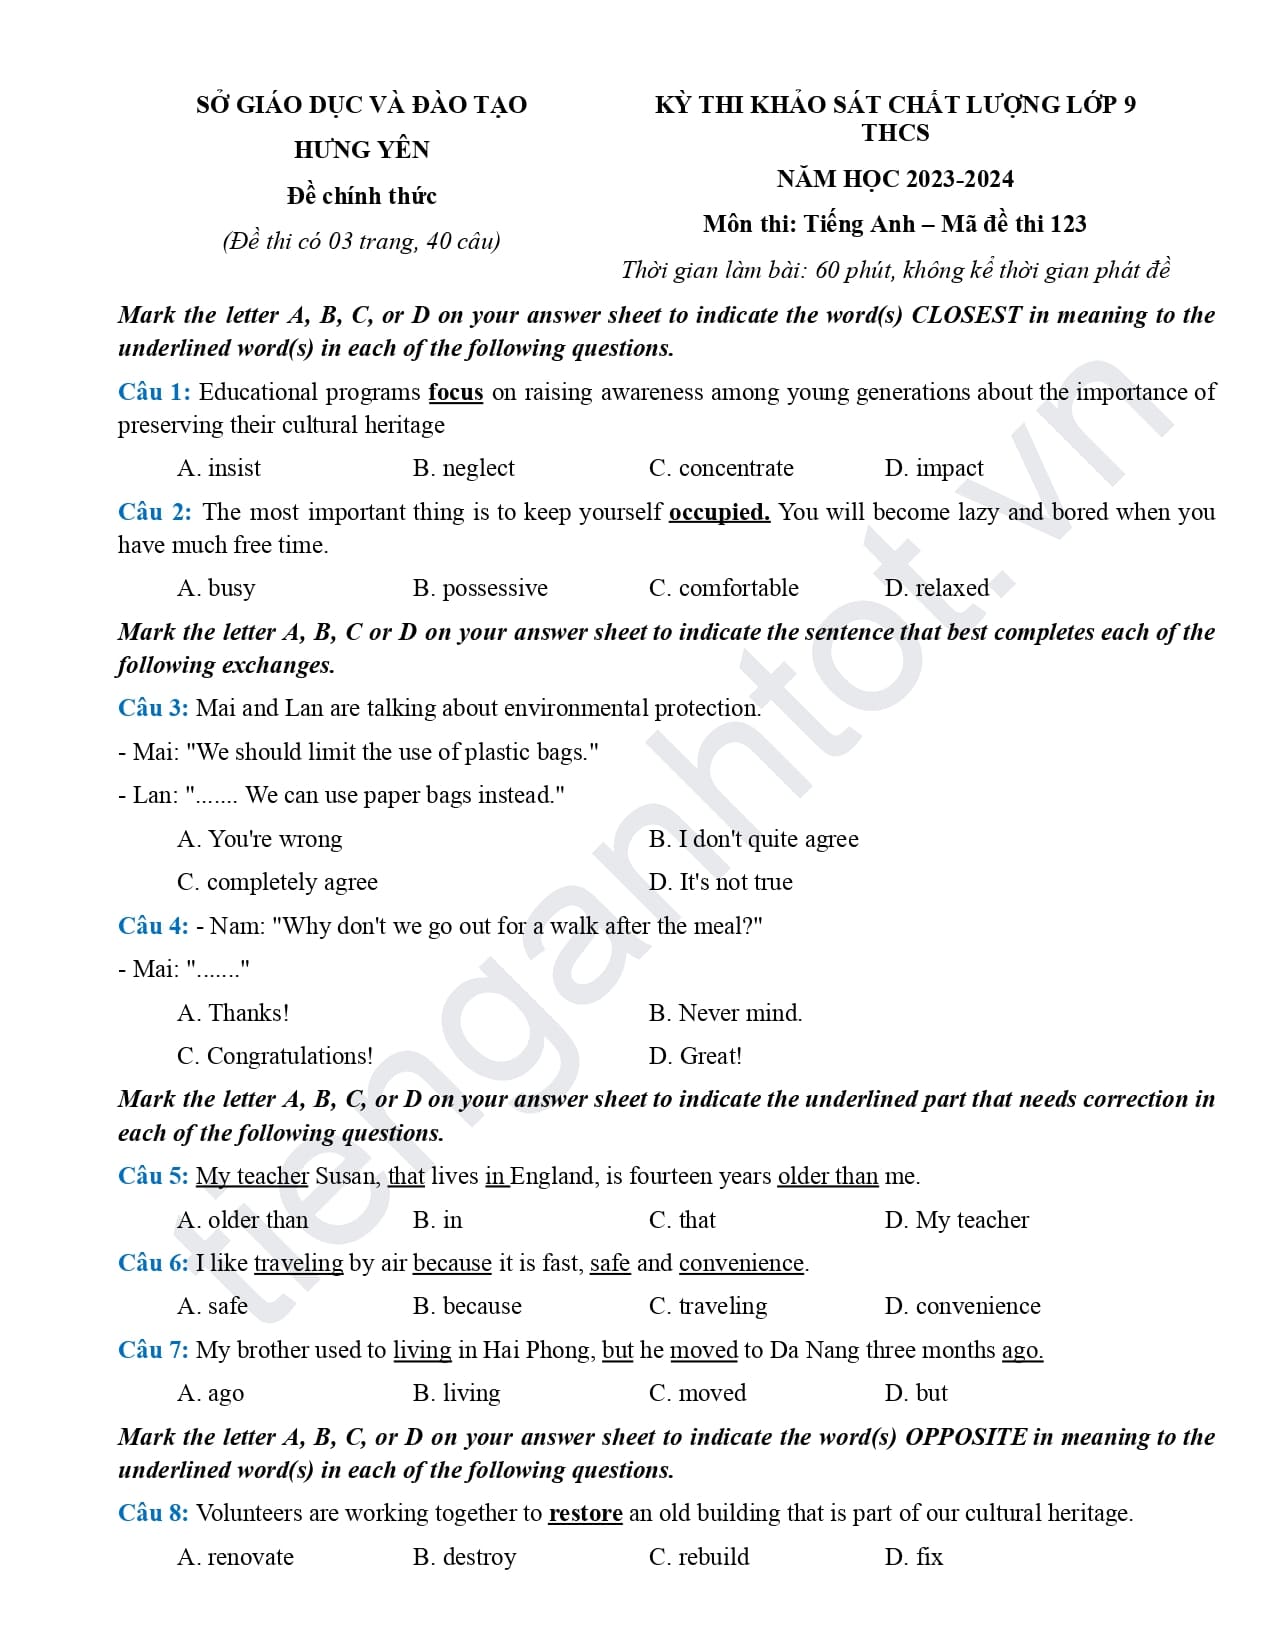 Đề thi khảo sát tiếng Anh lớp 9 Hưng Yên 2024 mã 123 